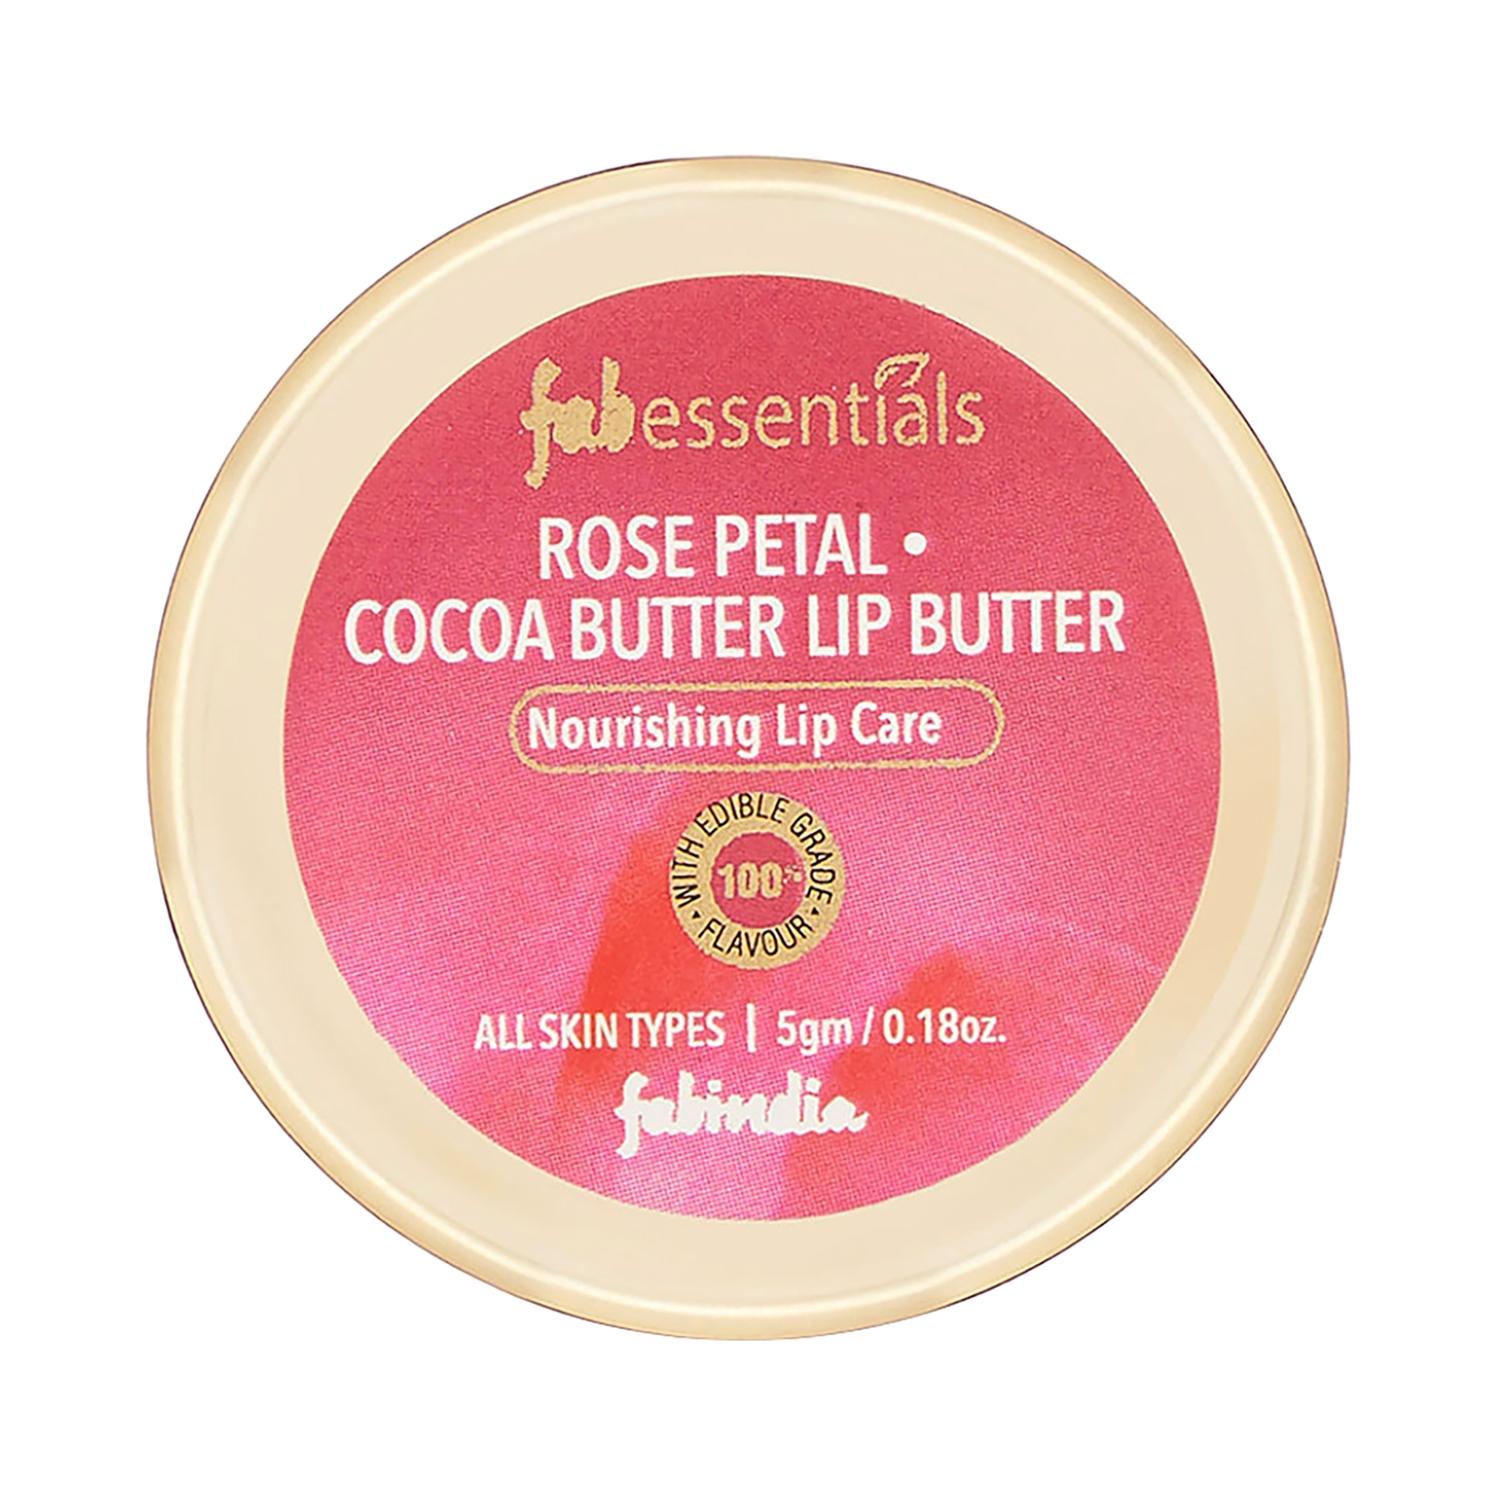 fabessentials-rose-petal-cocoa-butter-lip-butter-(5g)